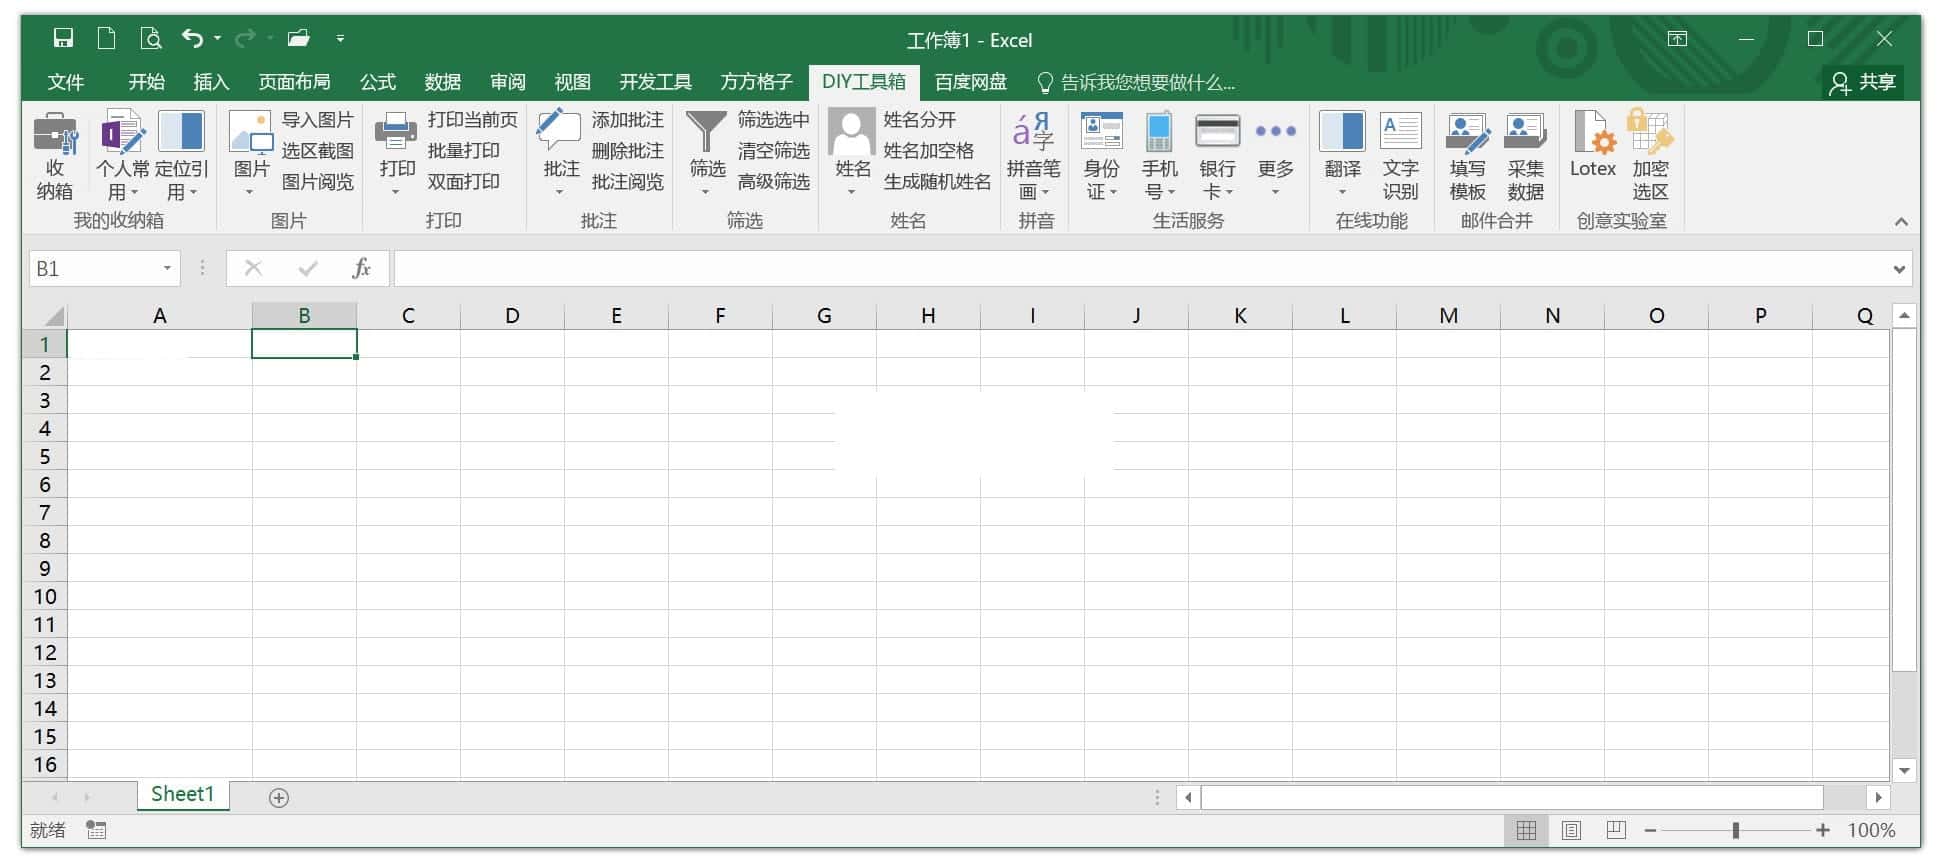 方方格子 Excel工具箱 v3.7.0.0 特别版下载